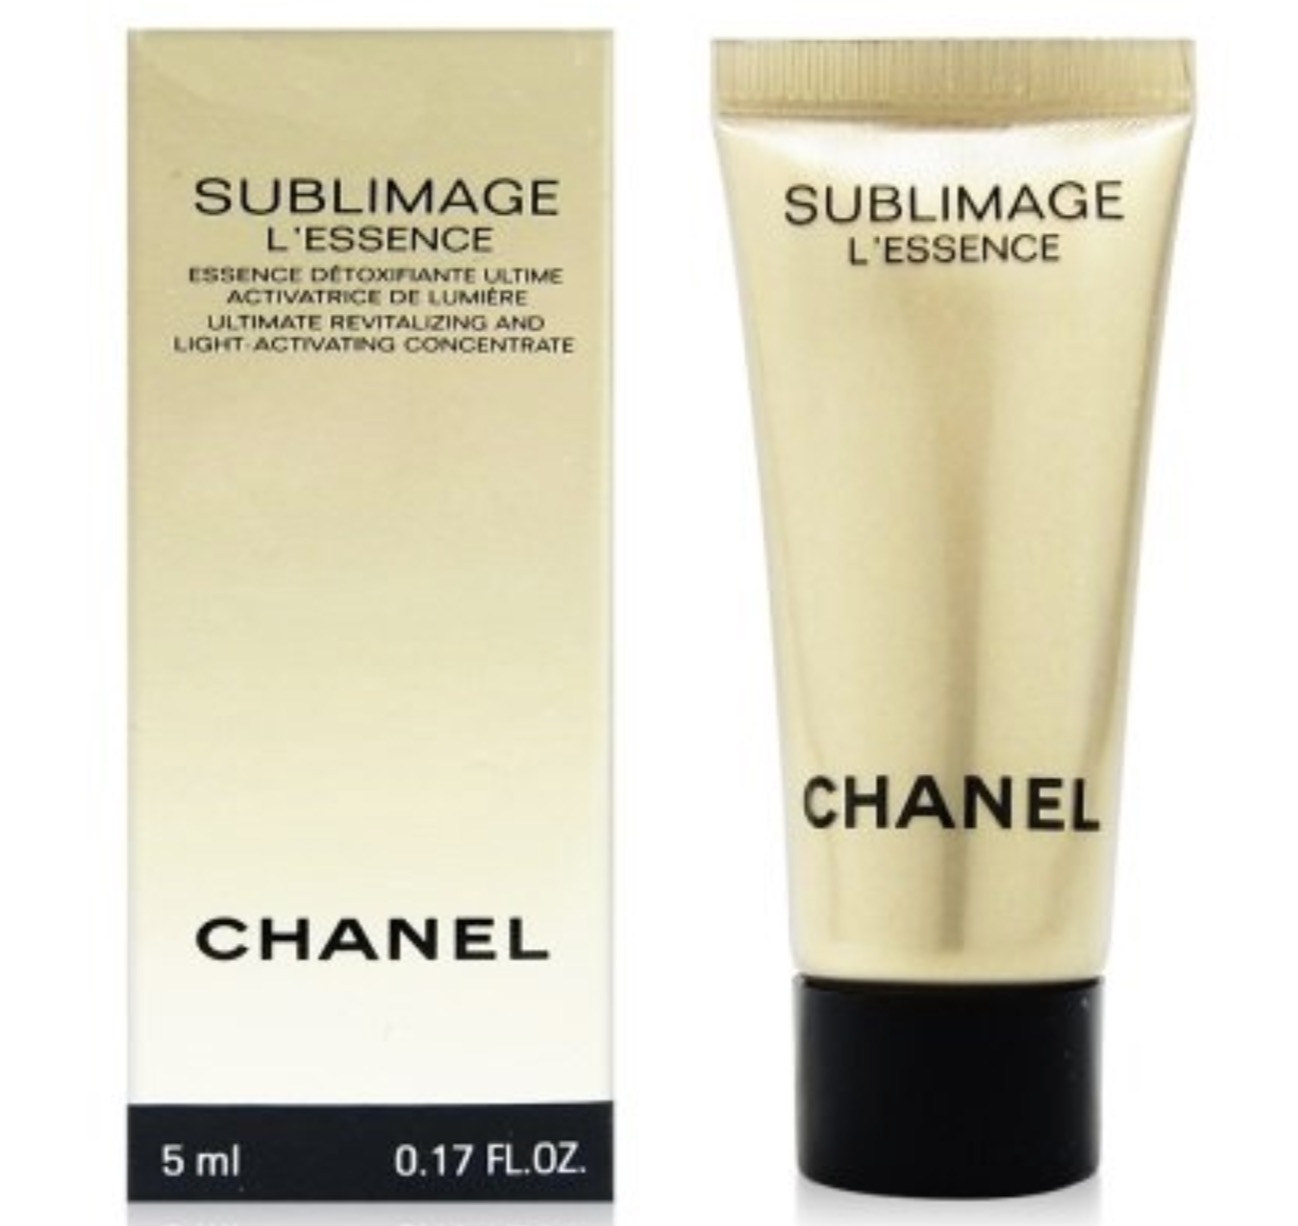 Chanel Sublimage L' Extrait De Creme Sample 0.17 Oz/5ml